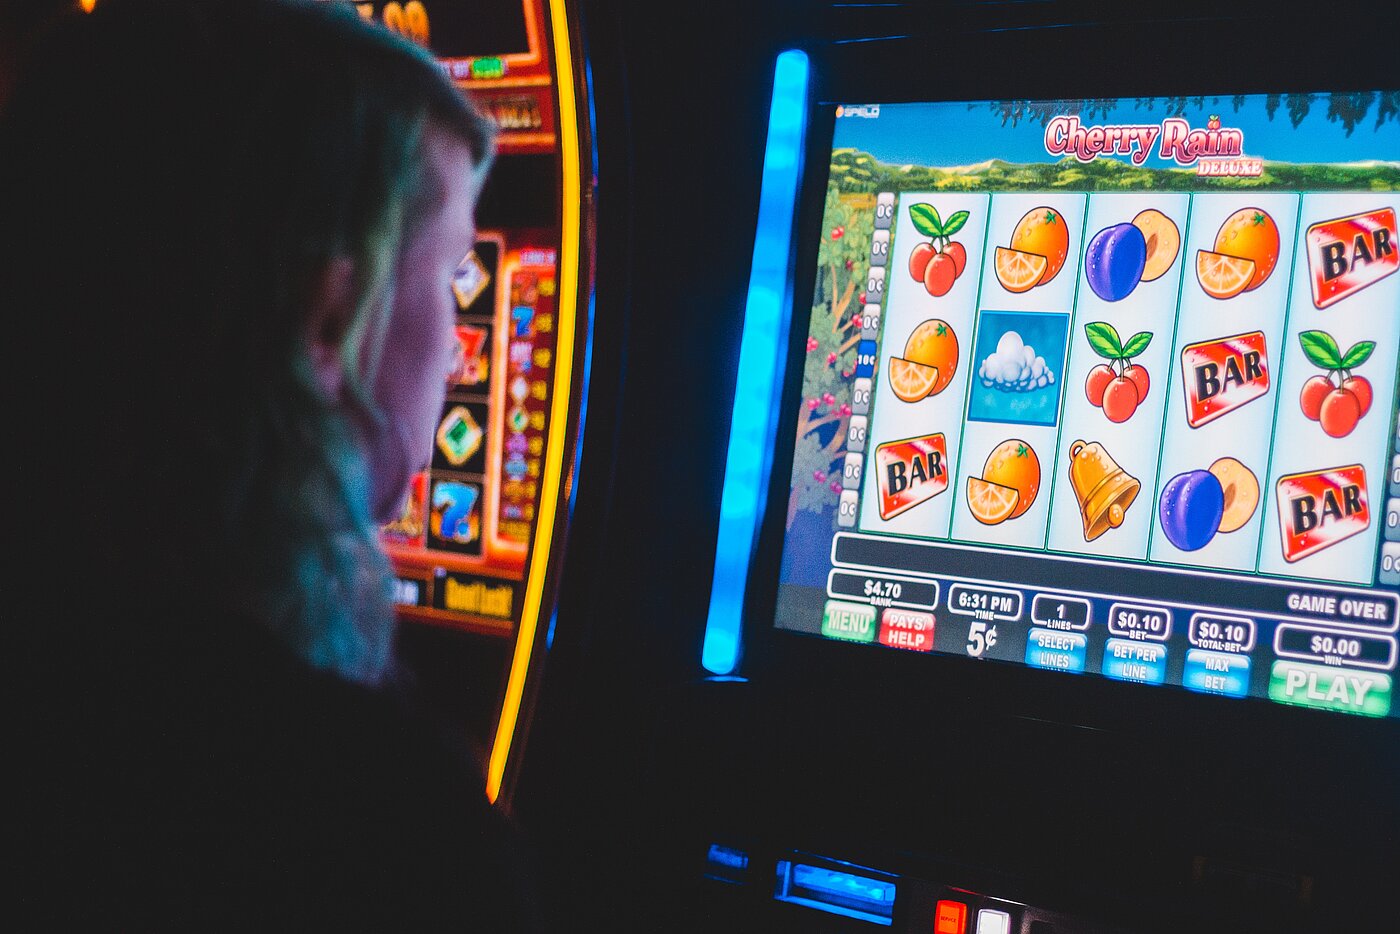 Das Bild zeigt einen Menschen, der vor einem Glücksspielautomaten sitzt